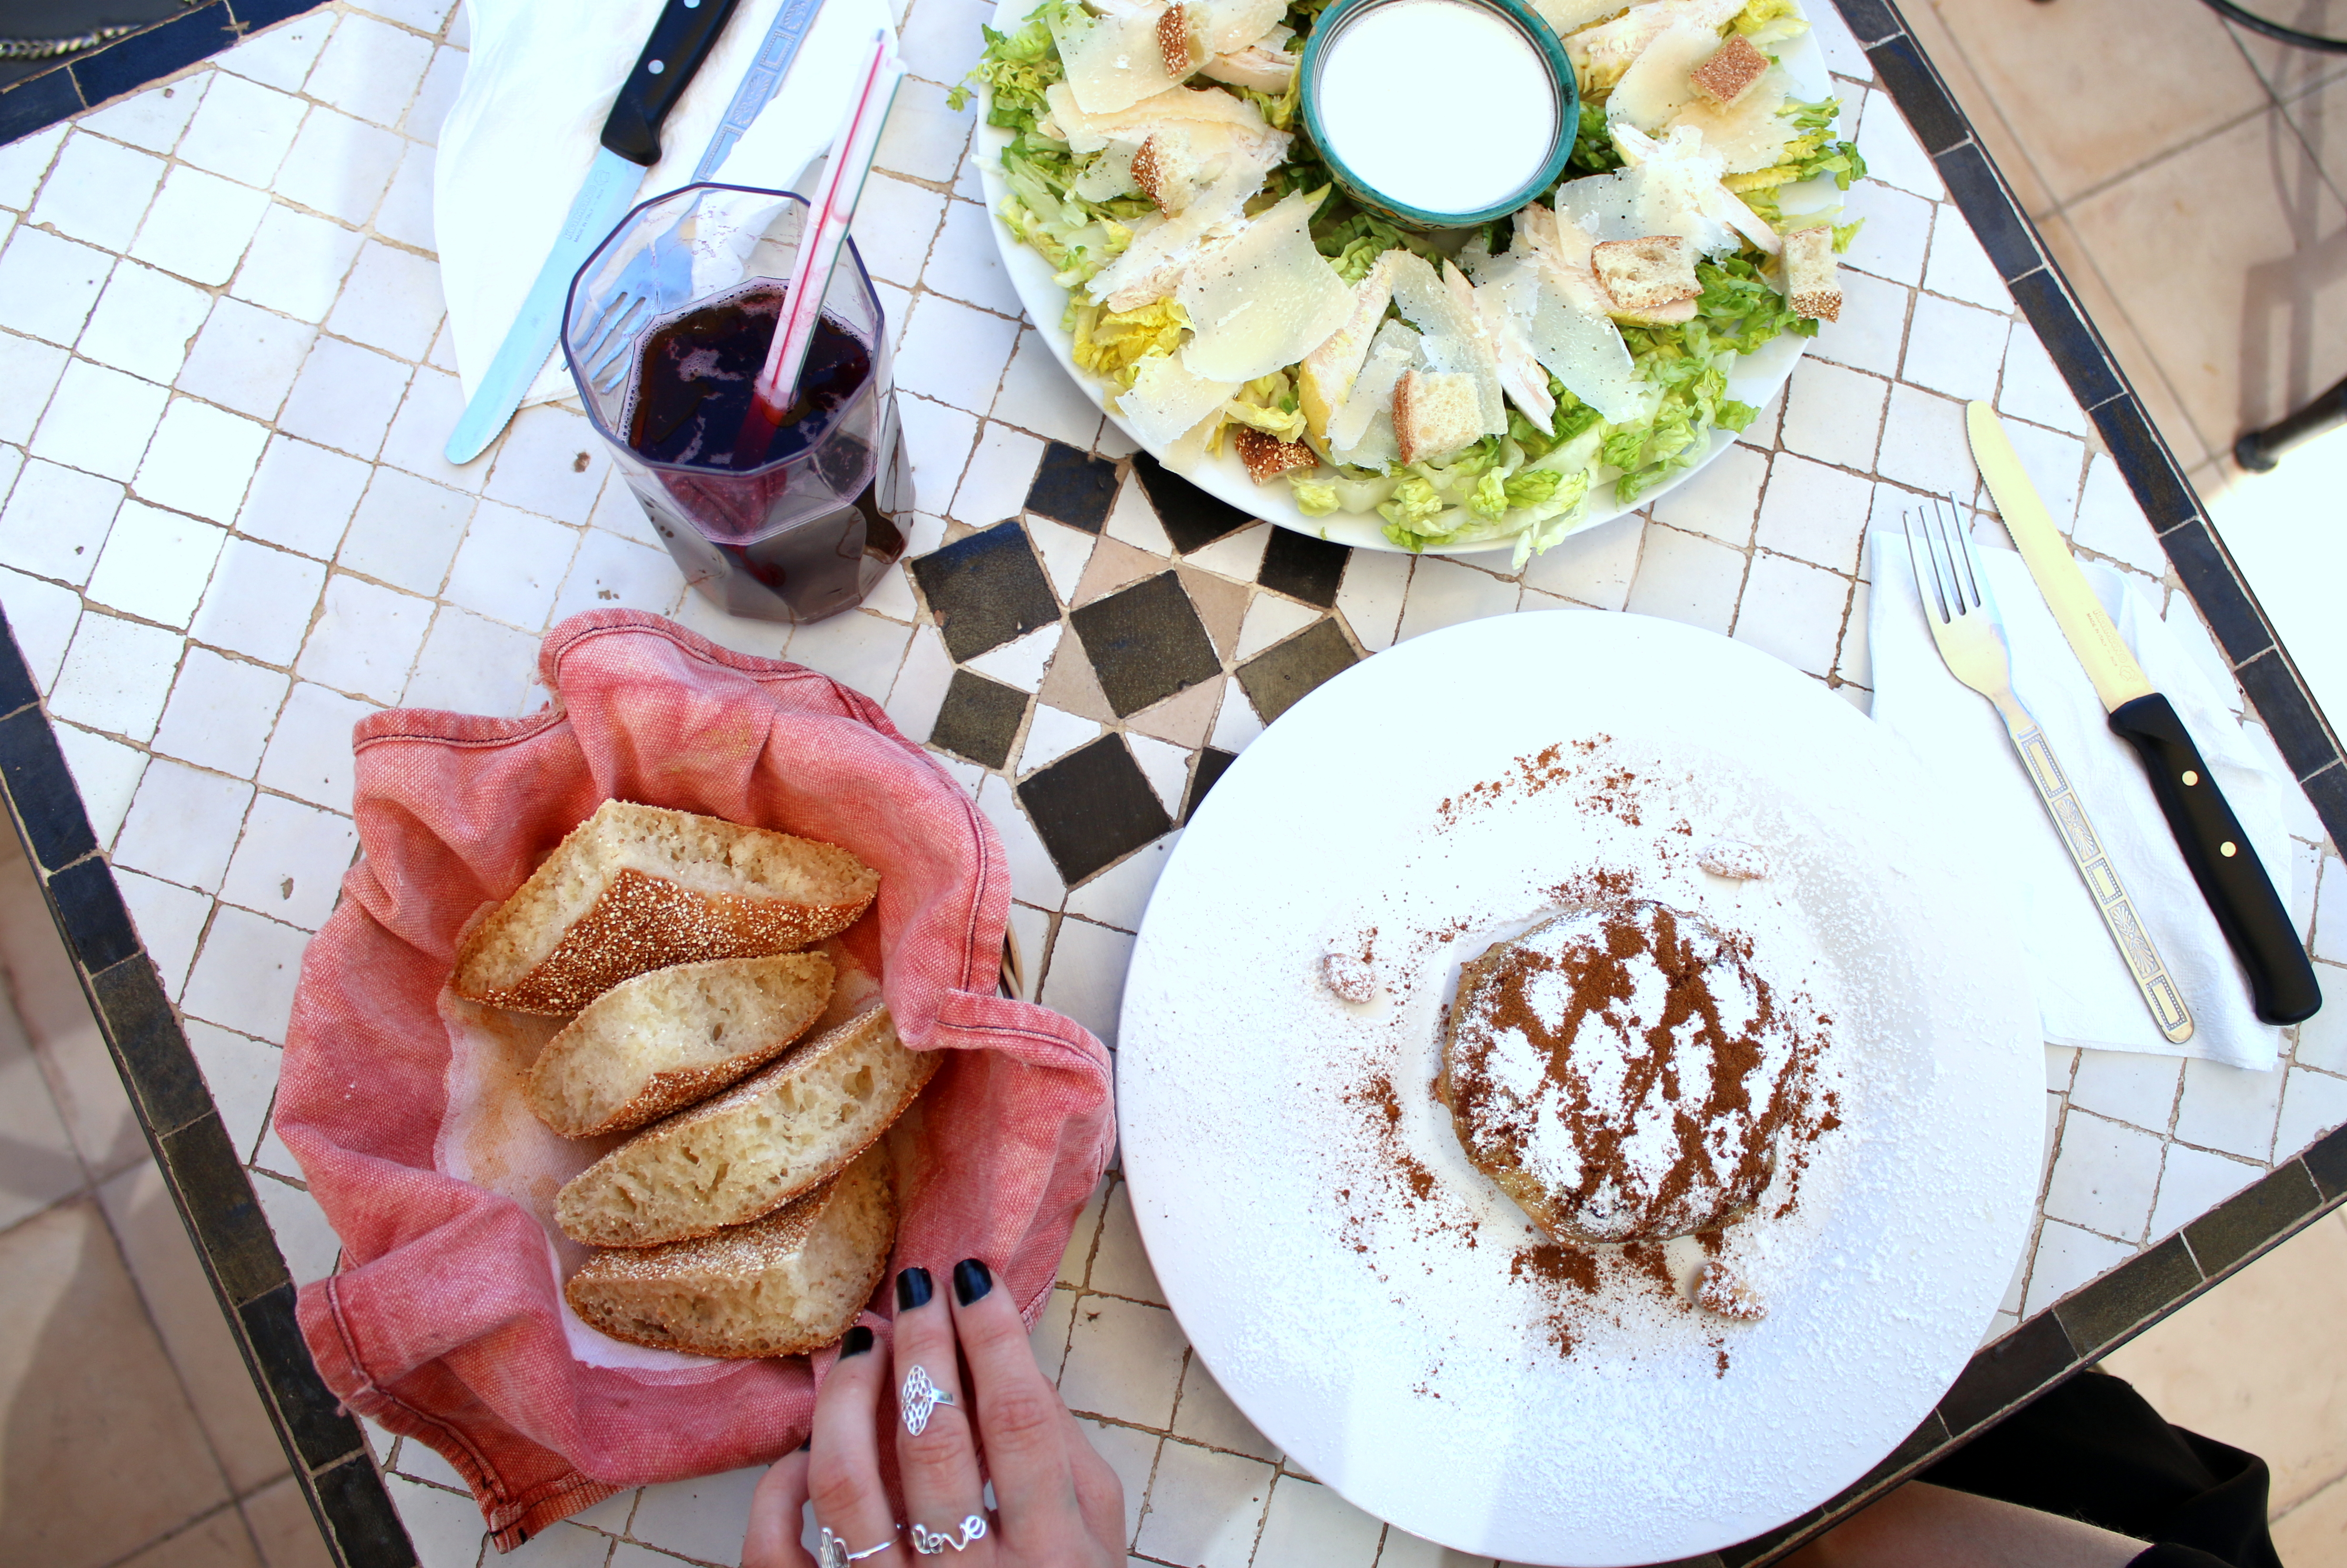 marrakech travel guide food tips bazaar cafe chicken pastilla travelblog foodblog